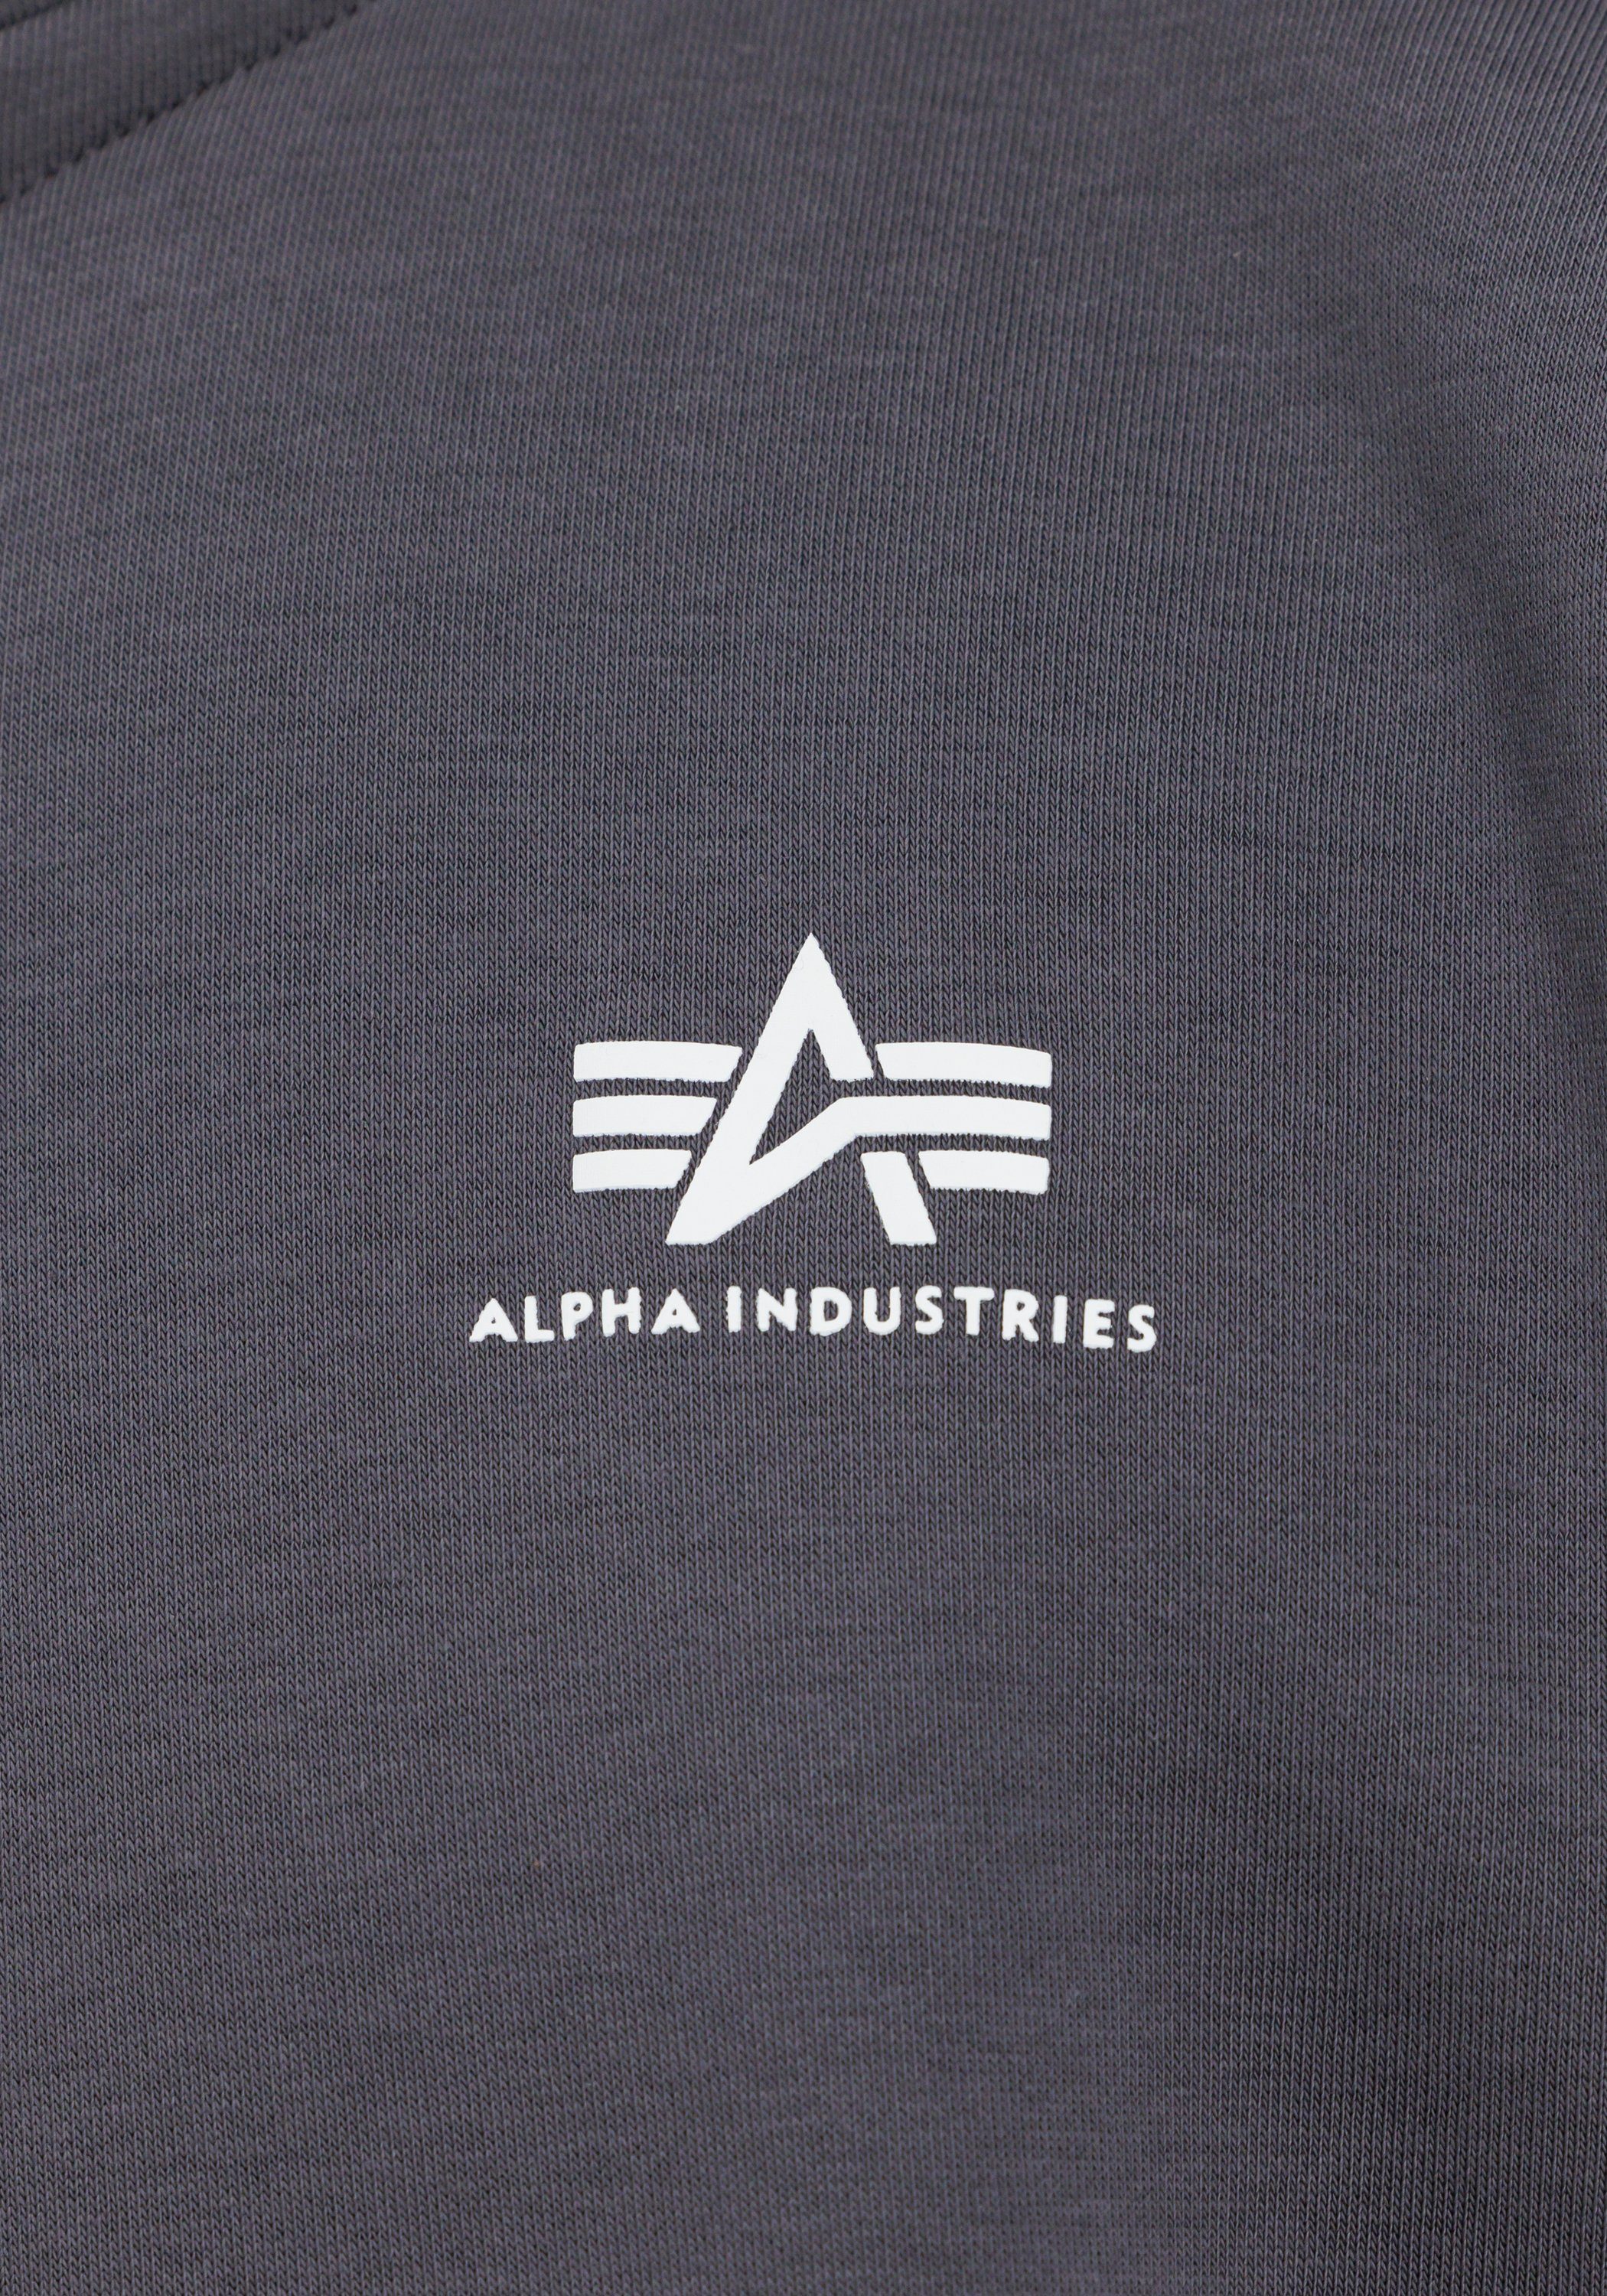 Sweatshirts grey Sweater Men Half - Zip Industries Alpha Sweater vintage Alpha Industries SL